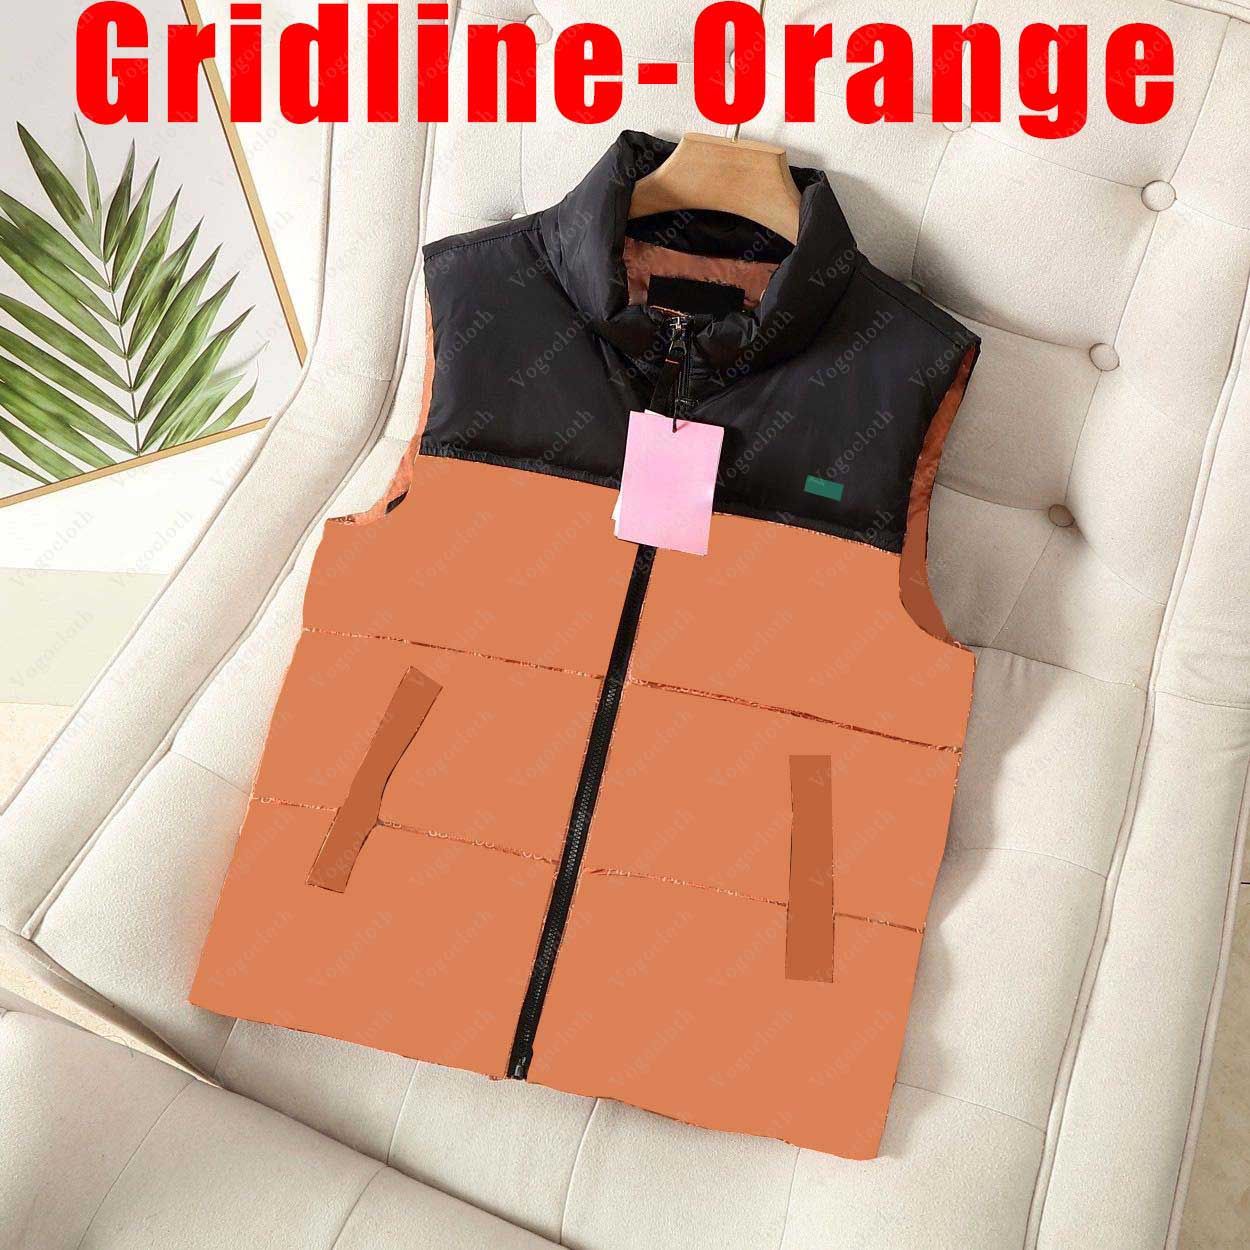 Grille-orange